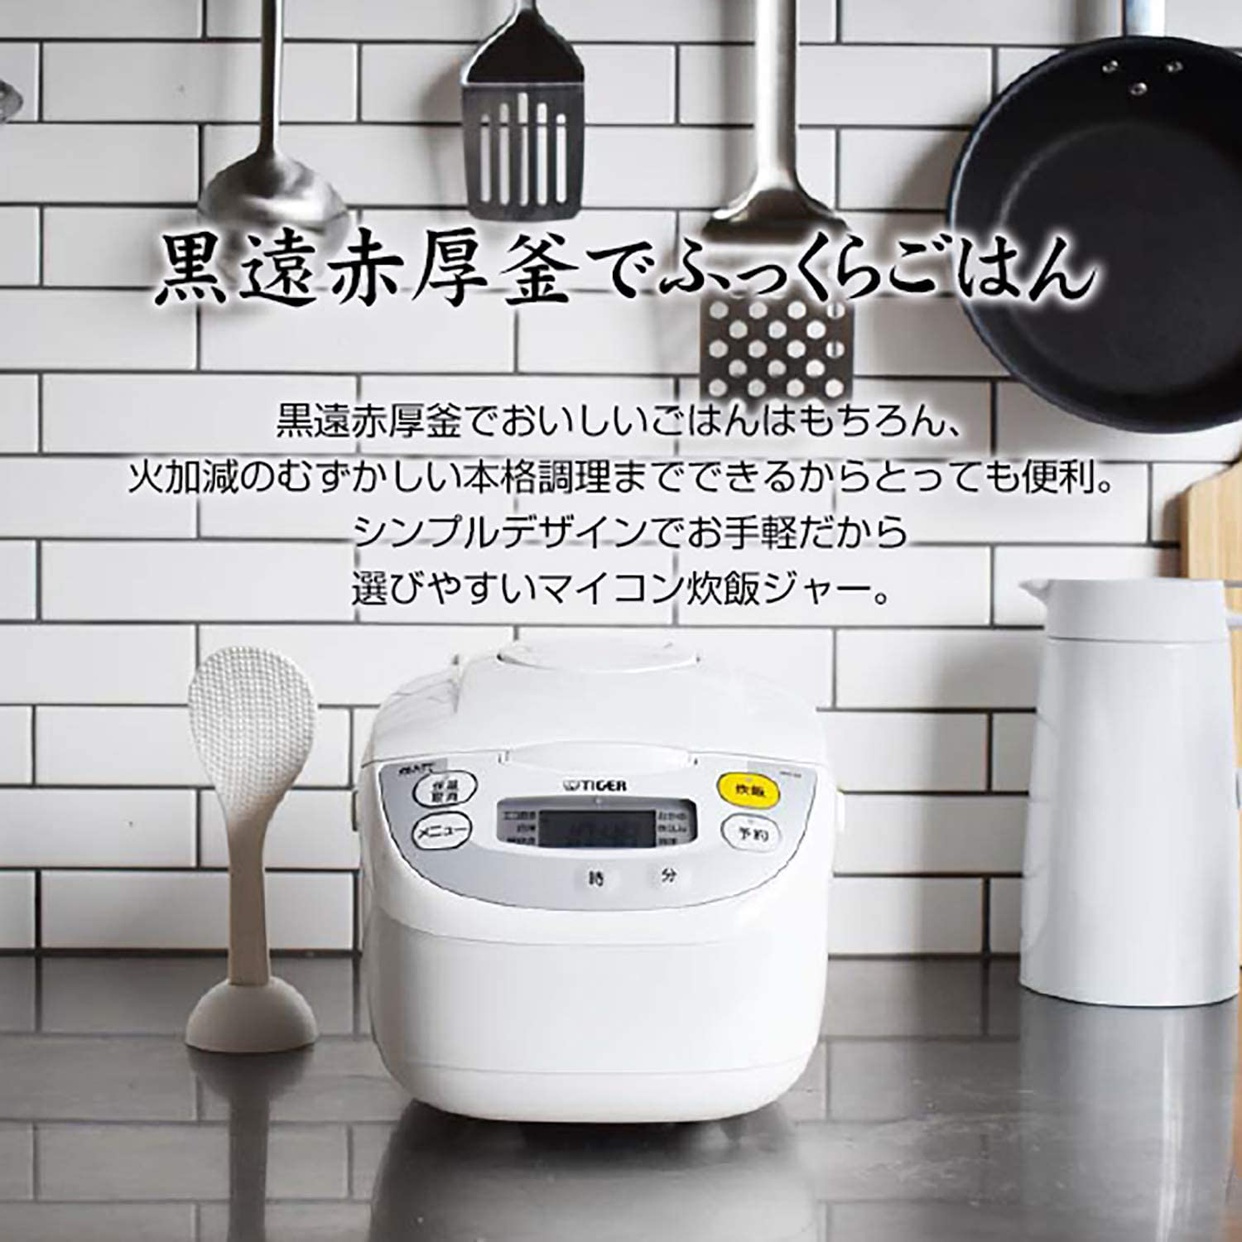 タイガー魔法瓶(TIGER) マイコンジャー炊飯器 炊きたて JBH-G101の商品画像サムネ2 